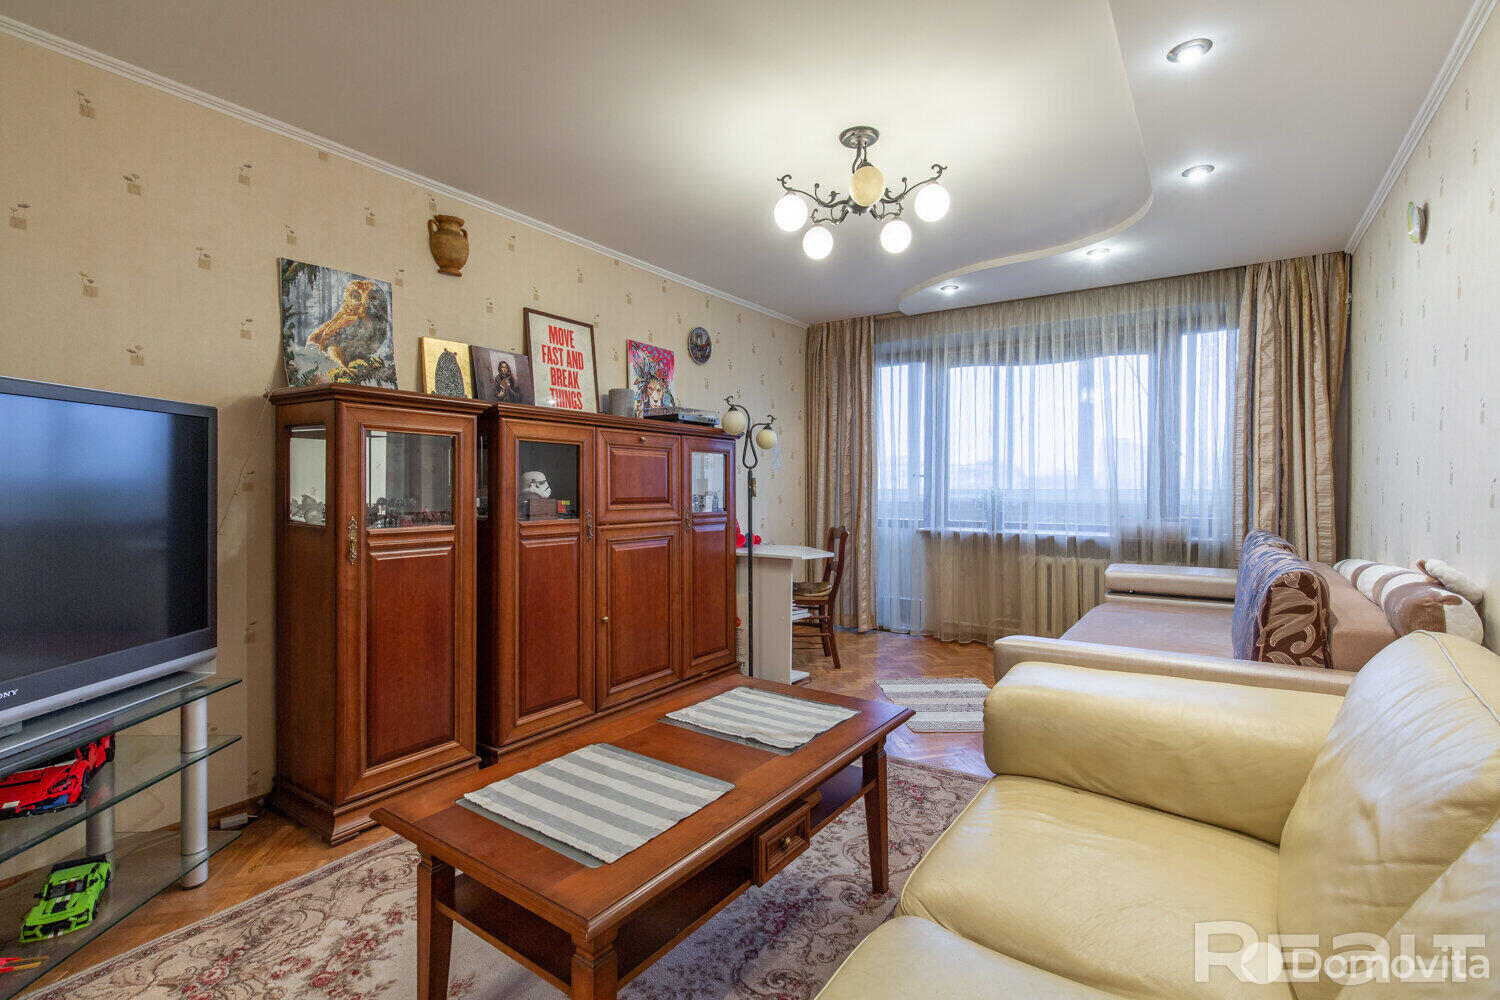 квартира, Минск, ул. Цнянская, д. 13, стоимость продажи 341 095 р.